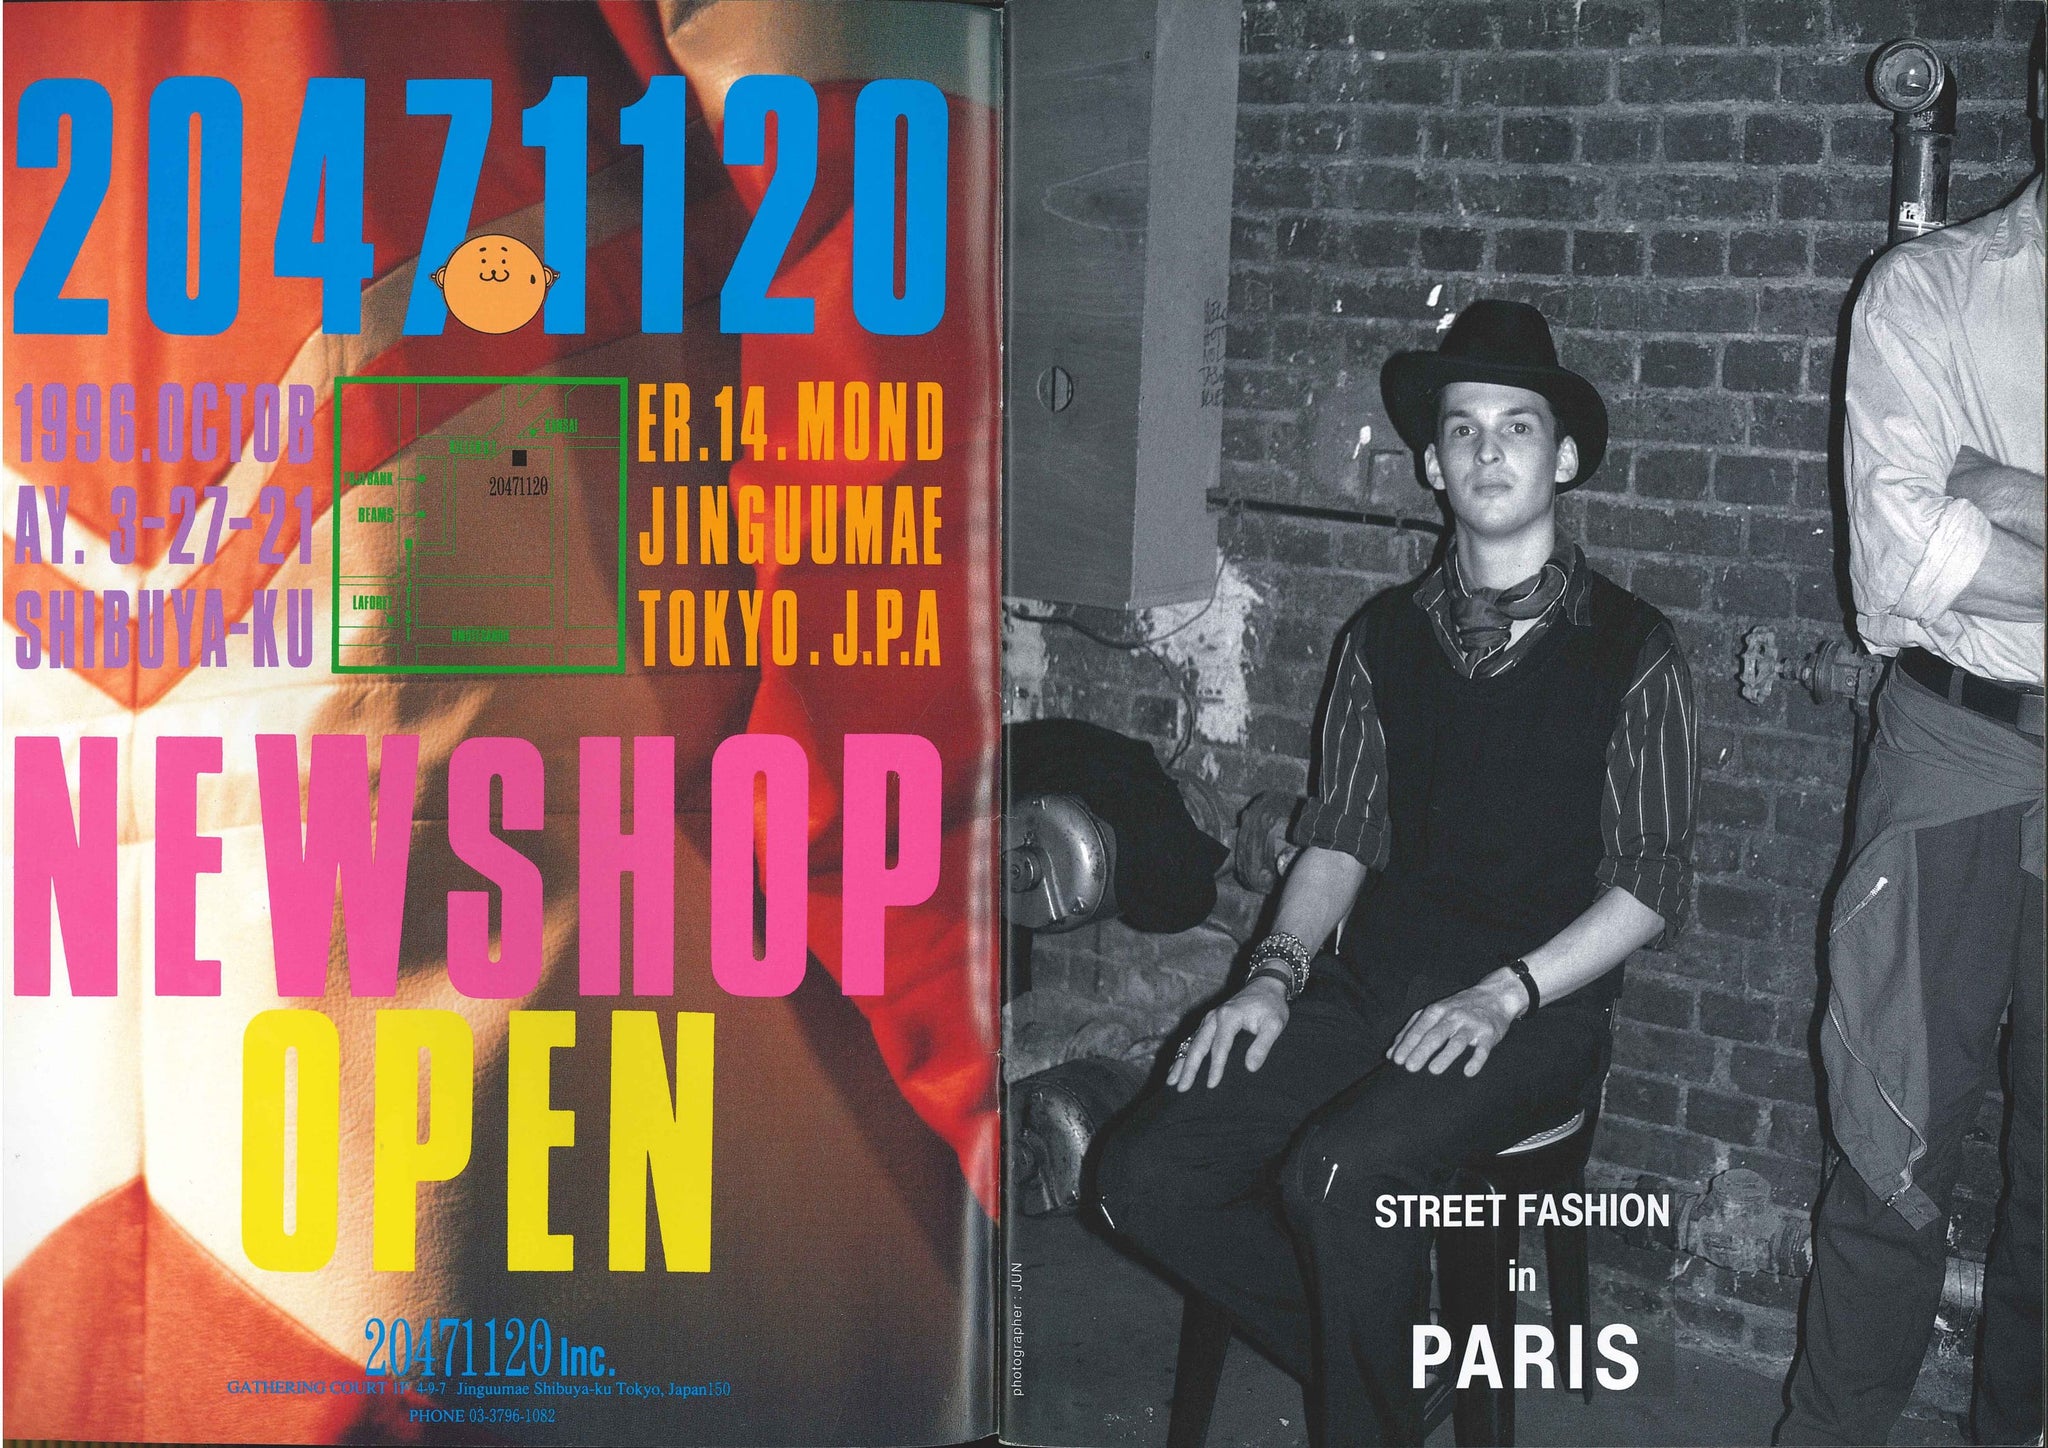 STREET magazine no. 88 / november 1996 / street fashion in paris / Shoichi Aoki